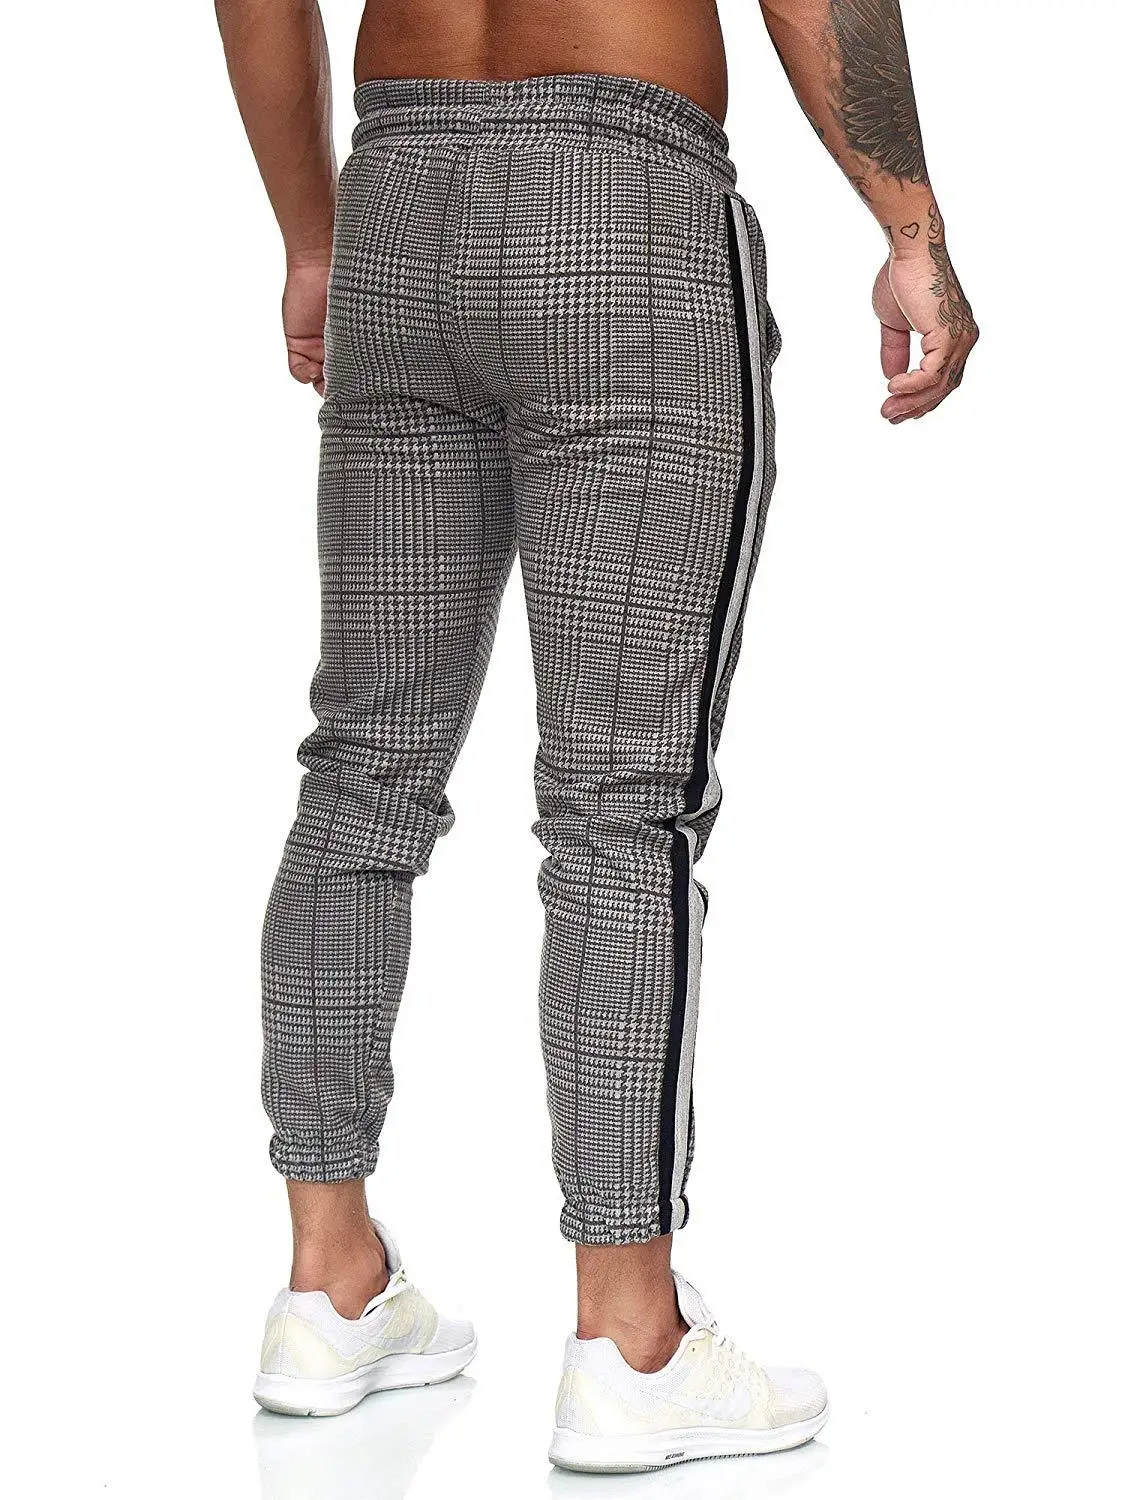 Повседневные мужские чиносы из хлопка, облегающие мужские брюки, узкие брюки-чиносы, серые тянущиеся брюки в клетку с полосками по бокам, S-3XL